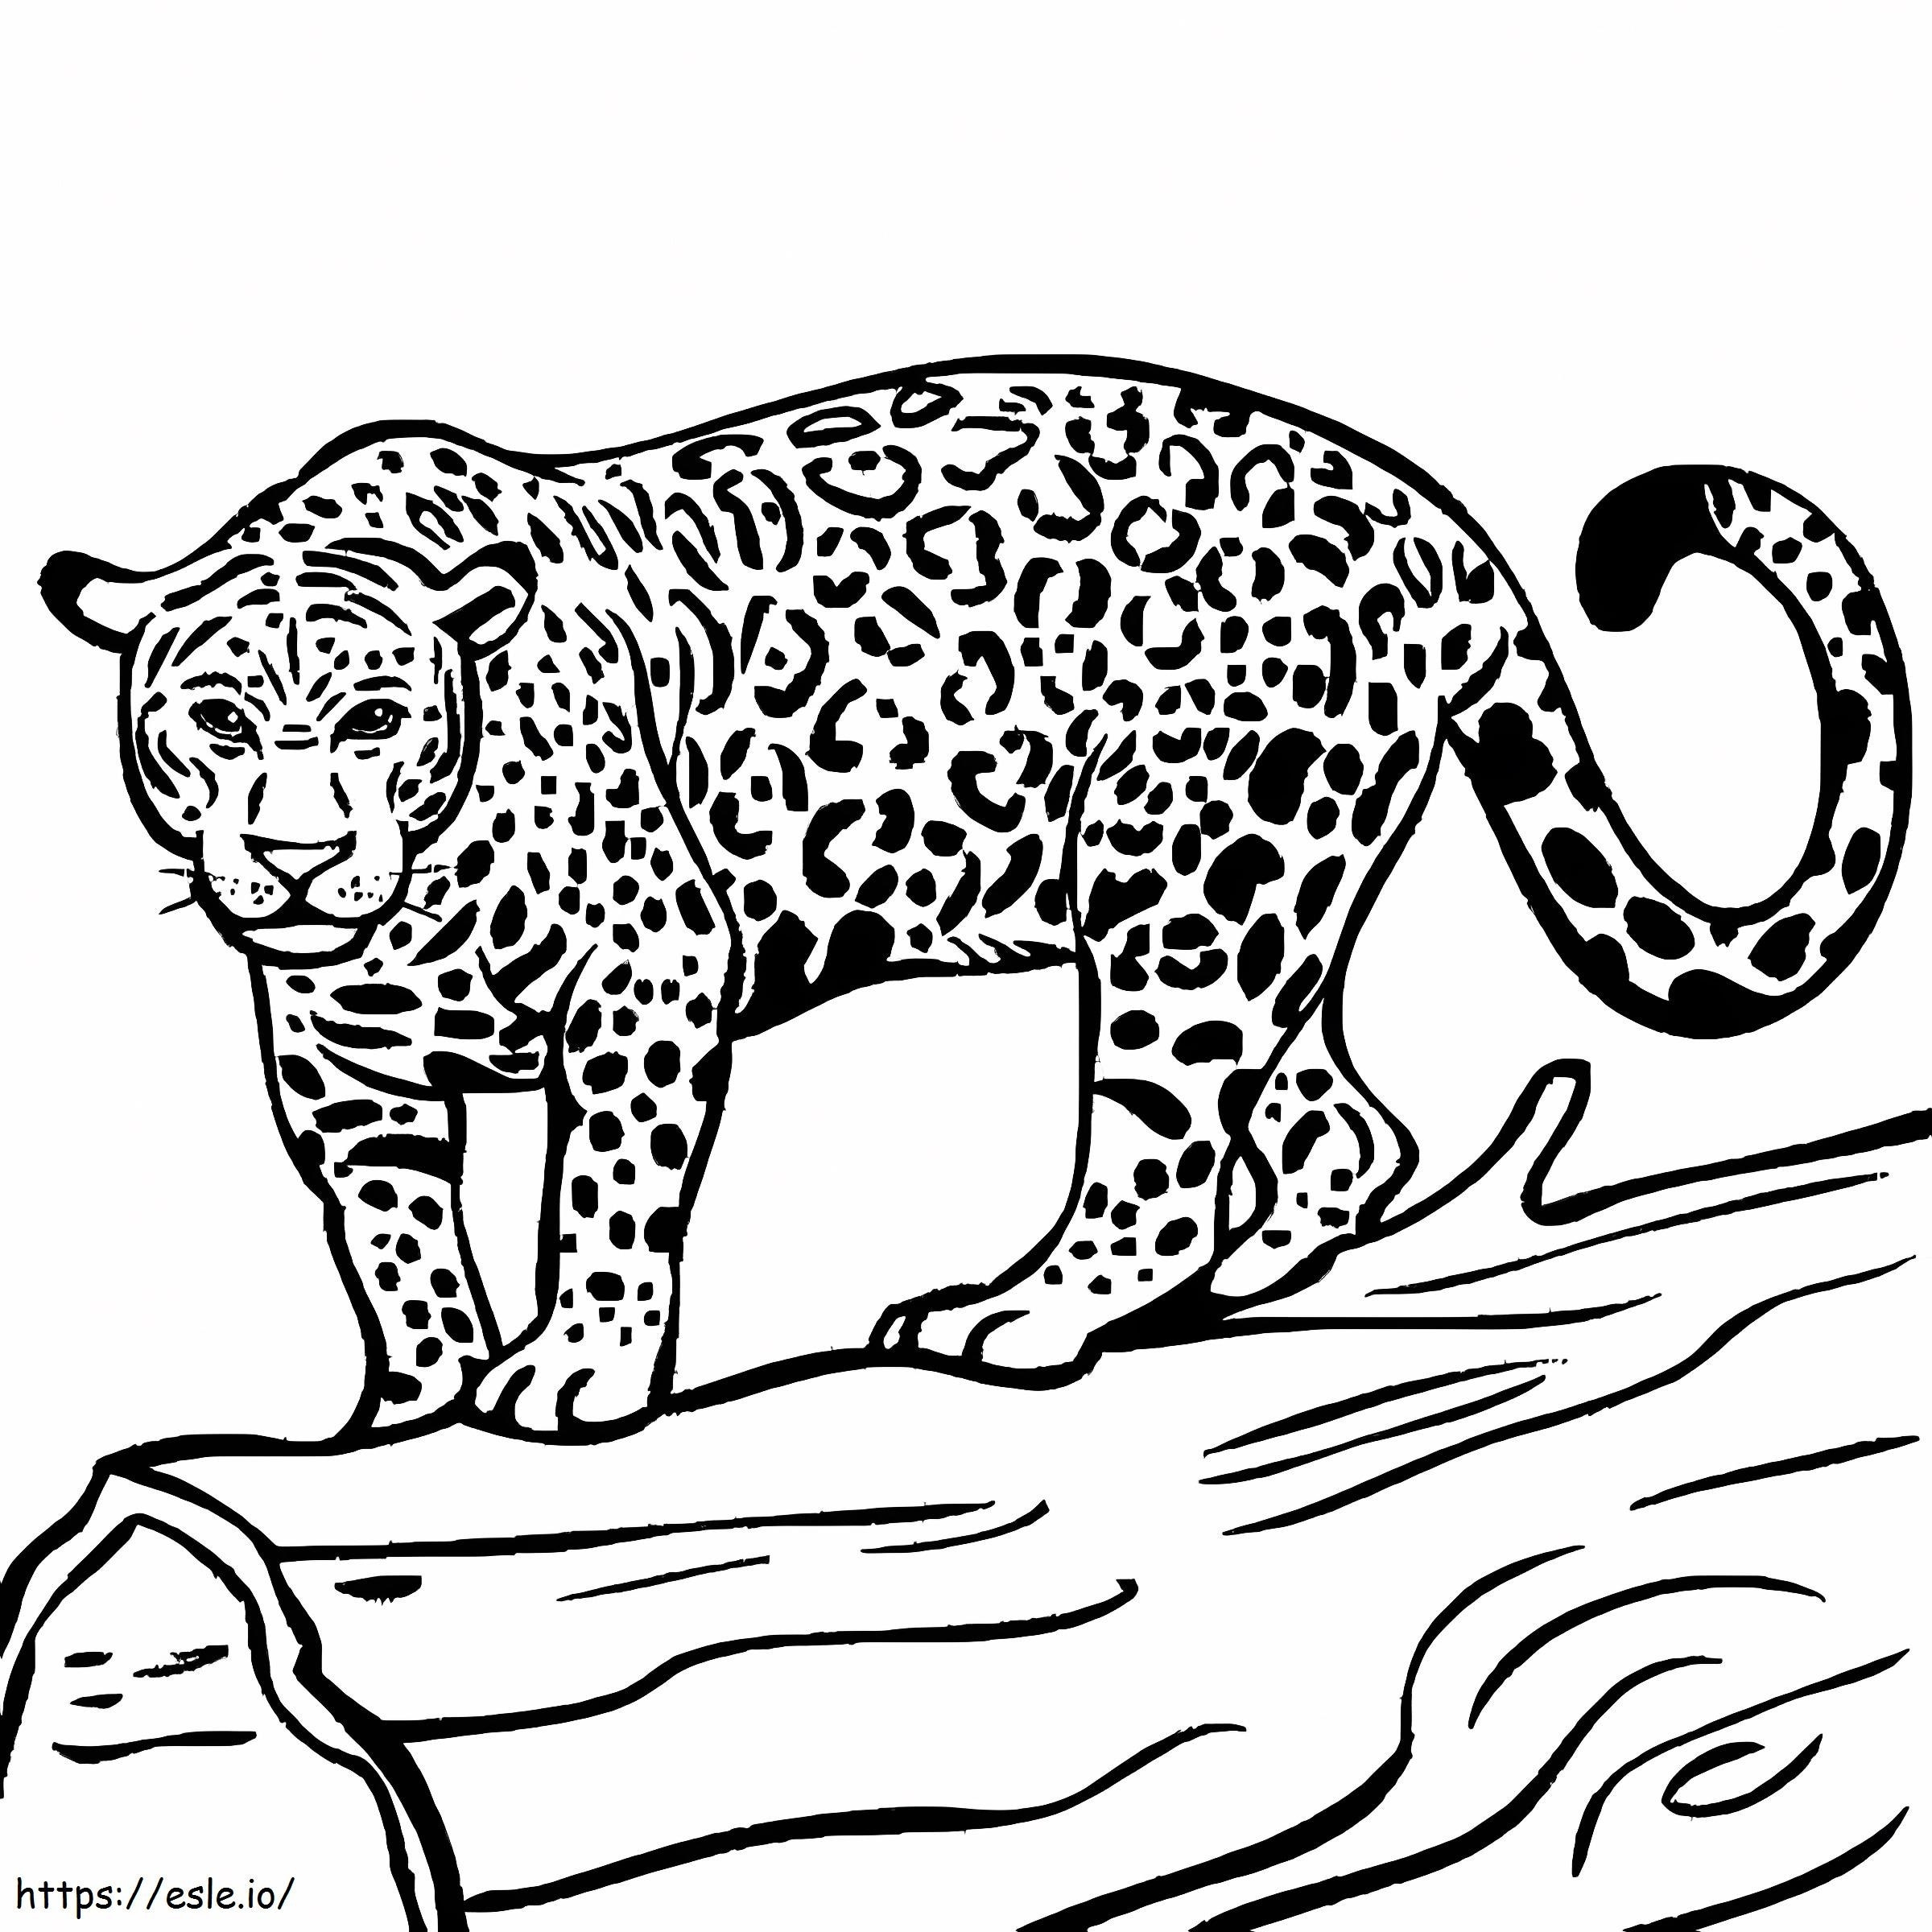 Jaguar bereit zur Jagd ausmalbilder